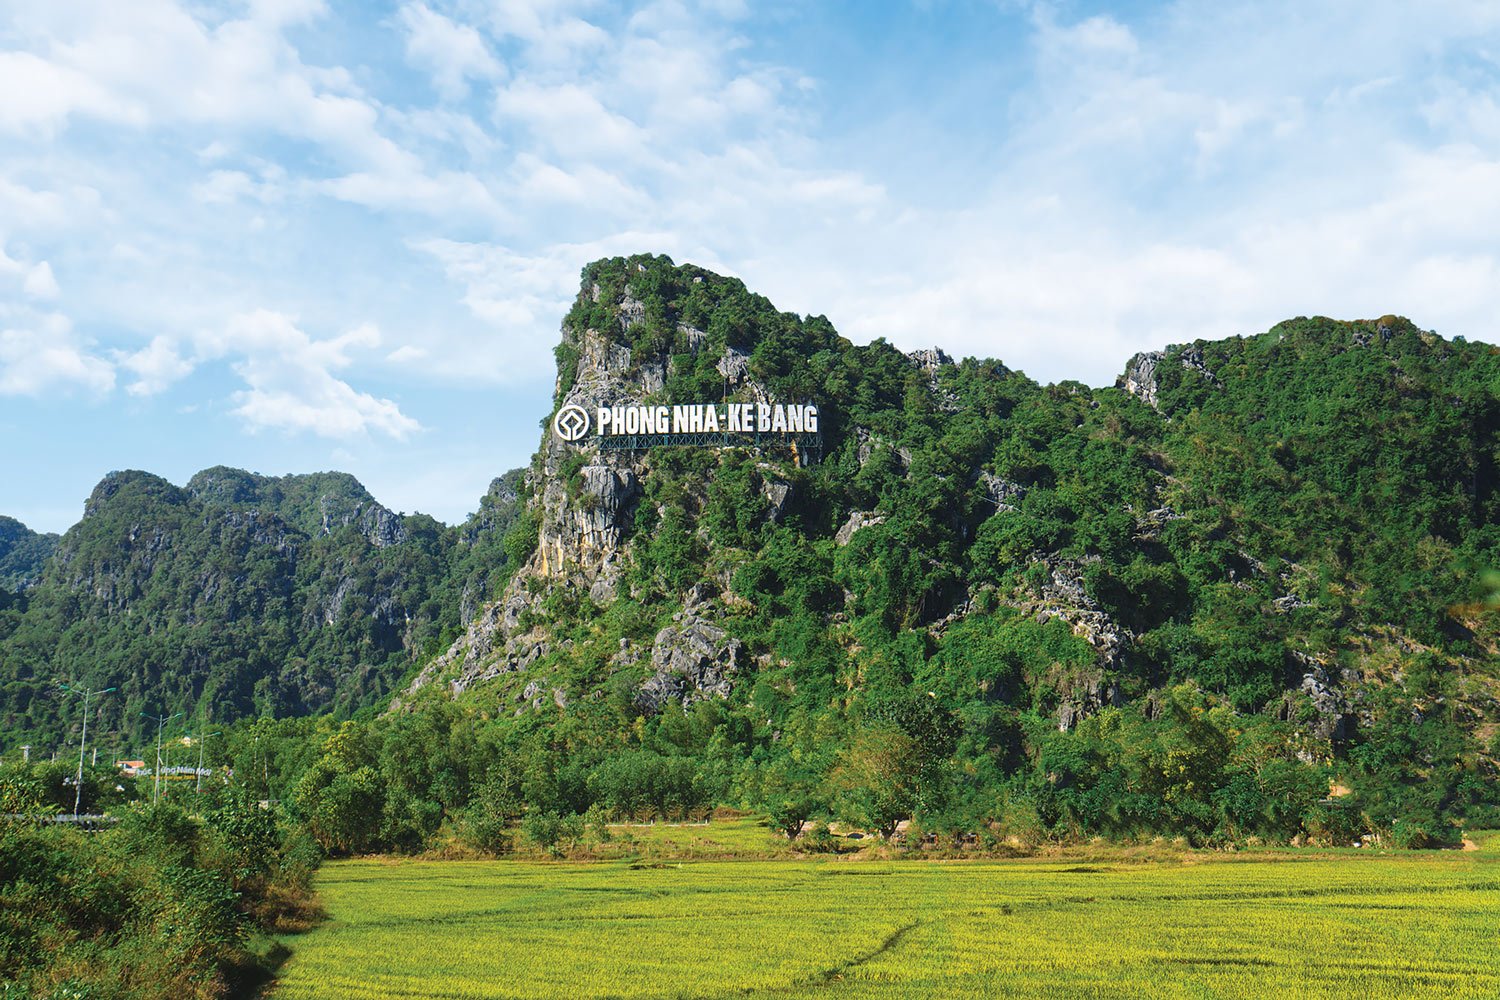 The feature limestone massif at the Phong Nha - Ke Bang National Park.